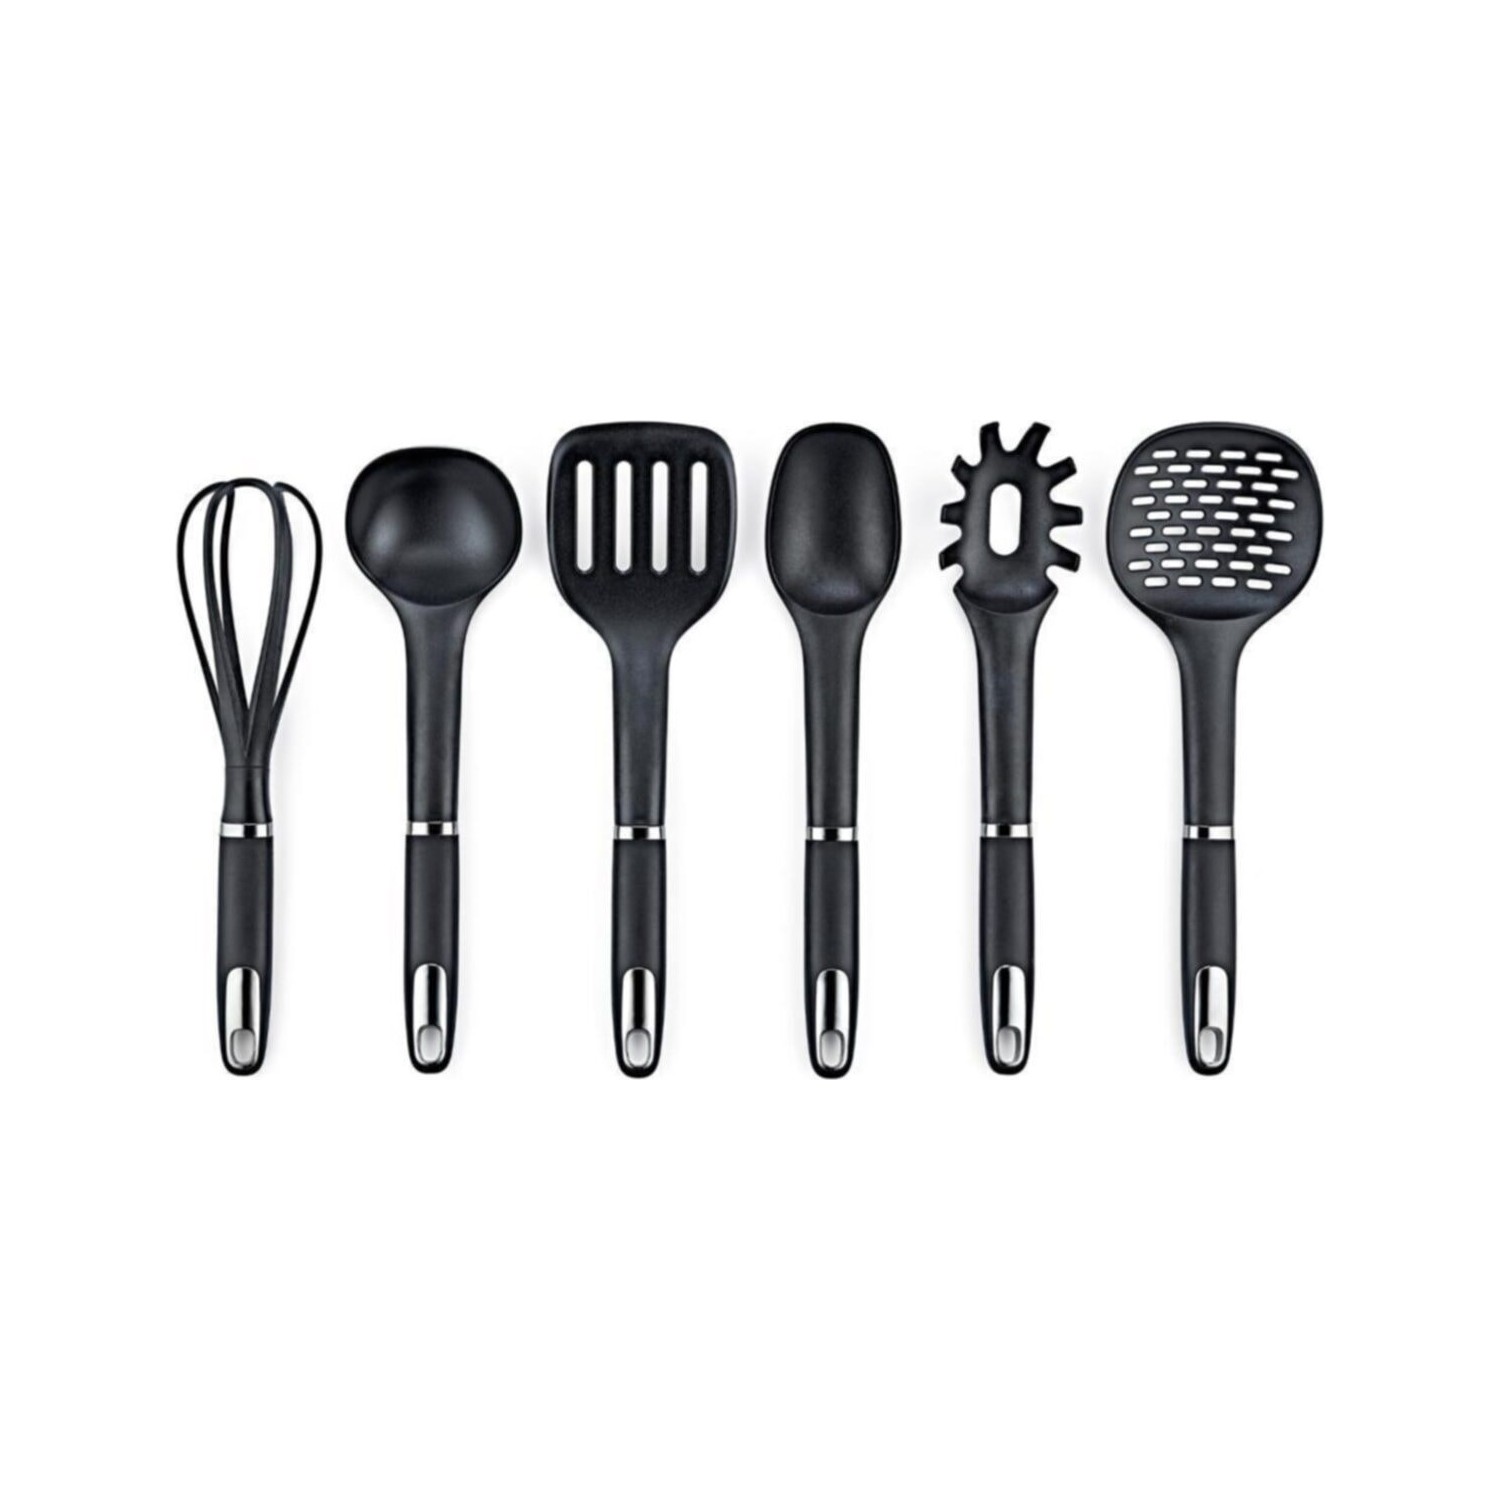 Набор кухонных принадлежностей Vipahmet из 6 предметов, черный набор кухонных принадлежностей ownland 6 предметов черный